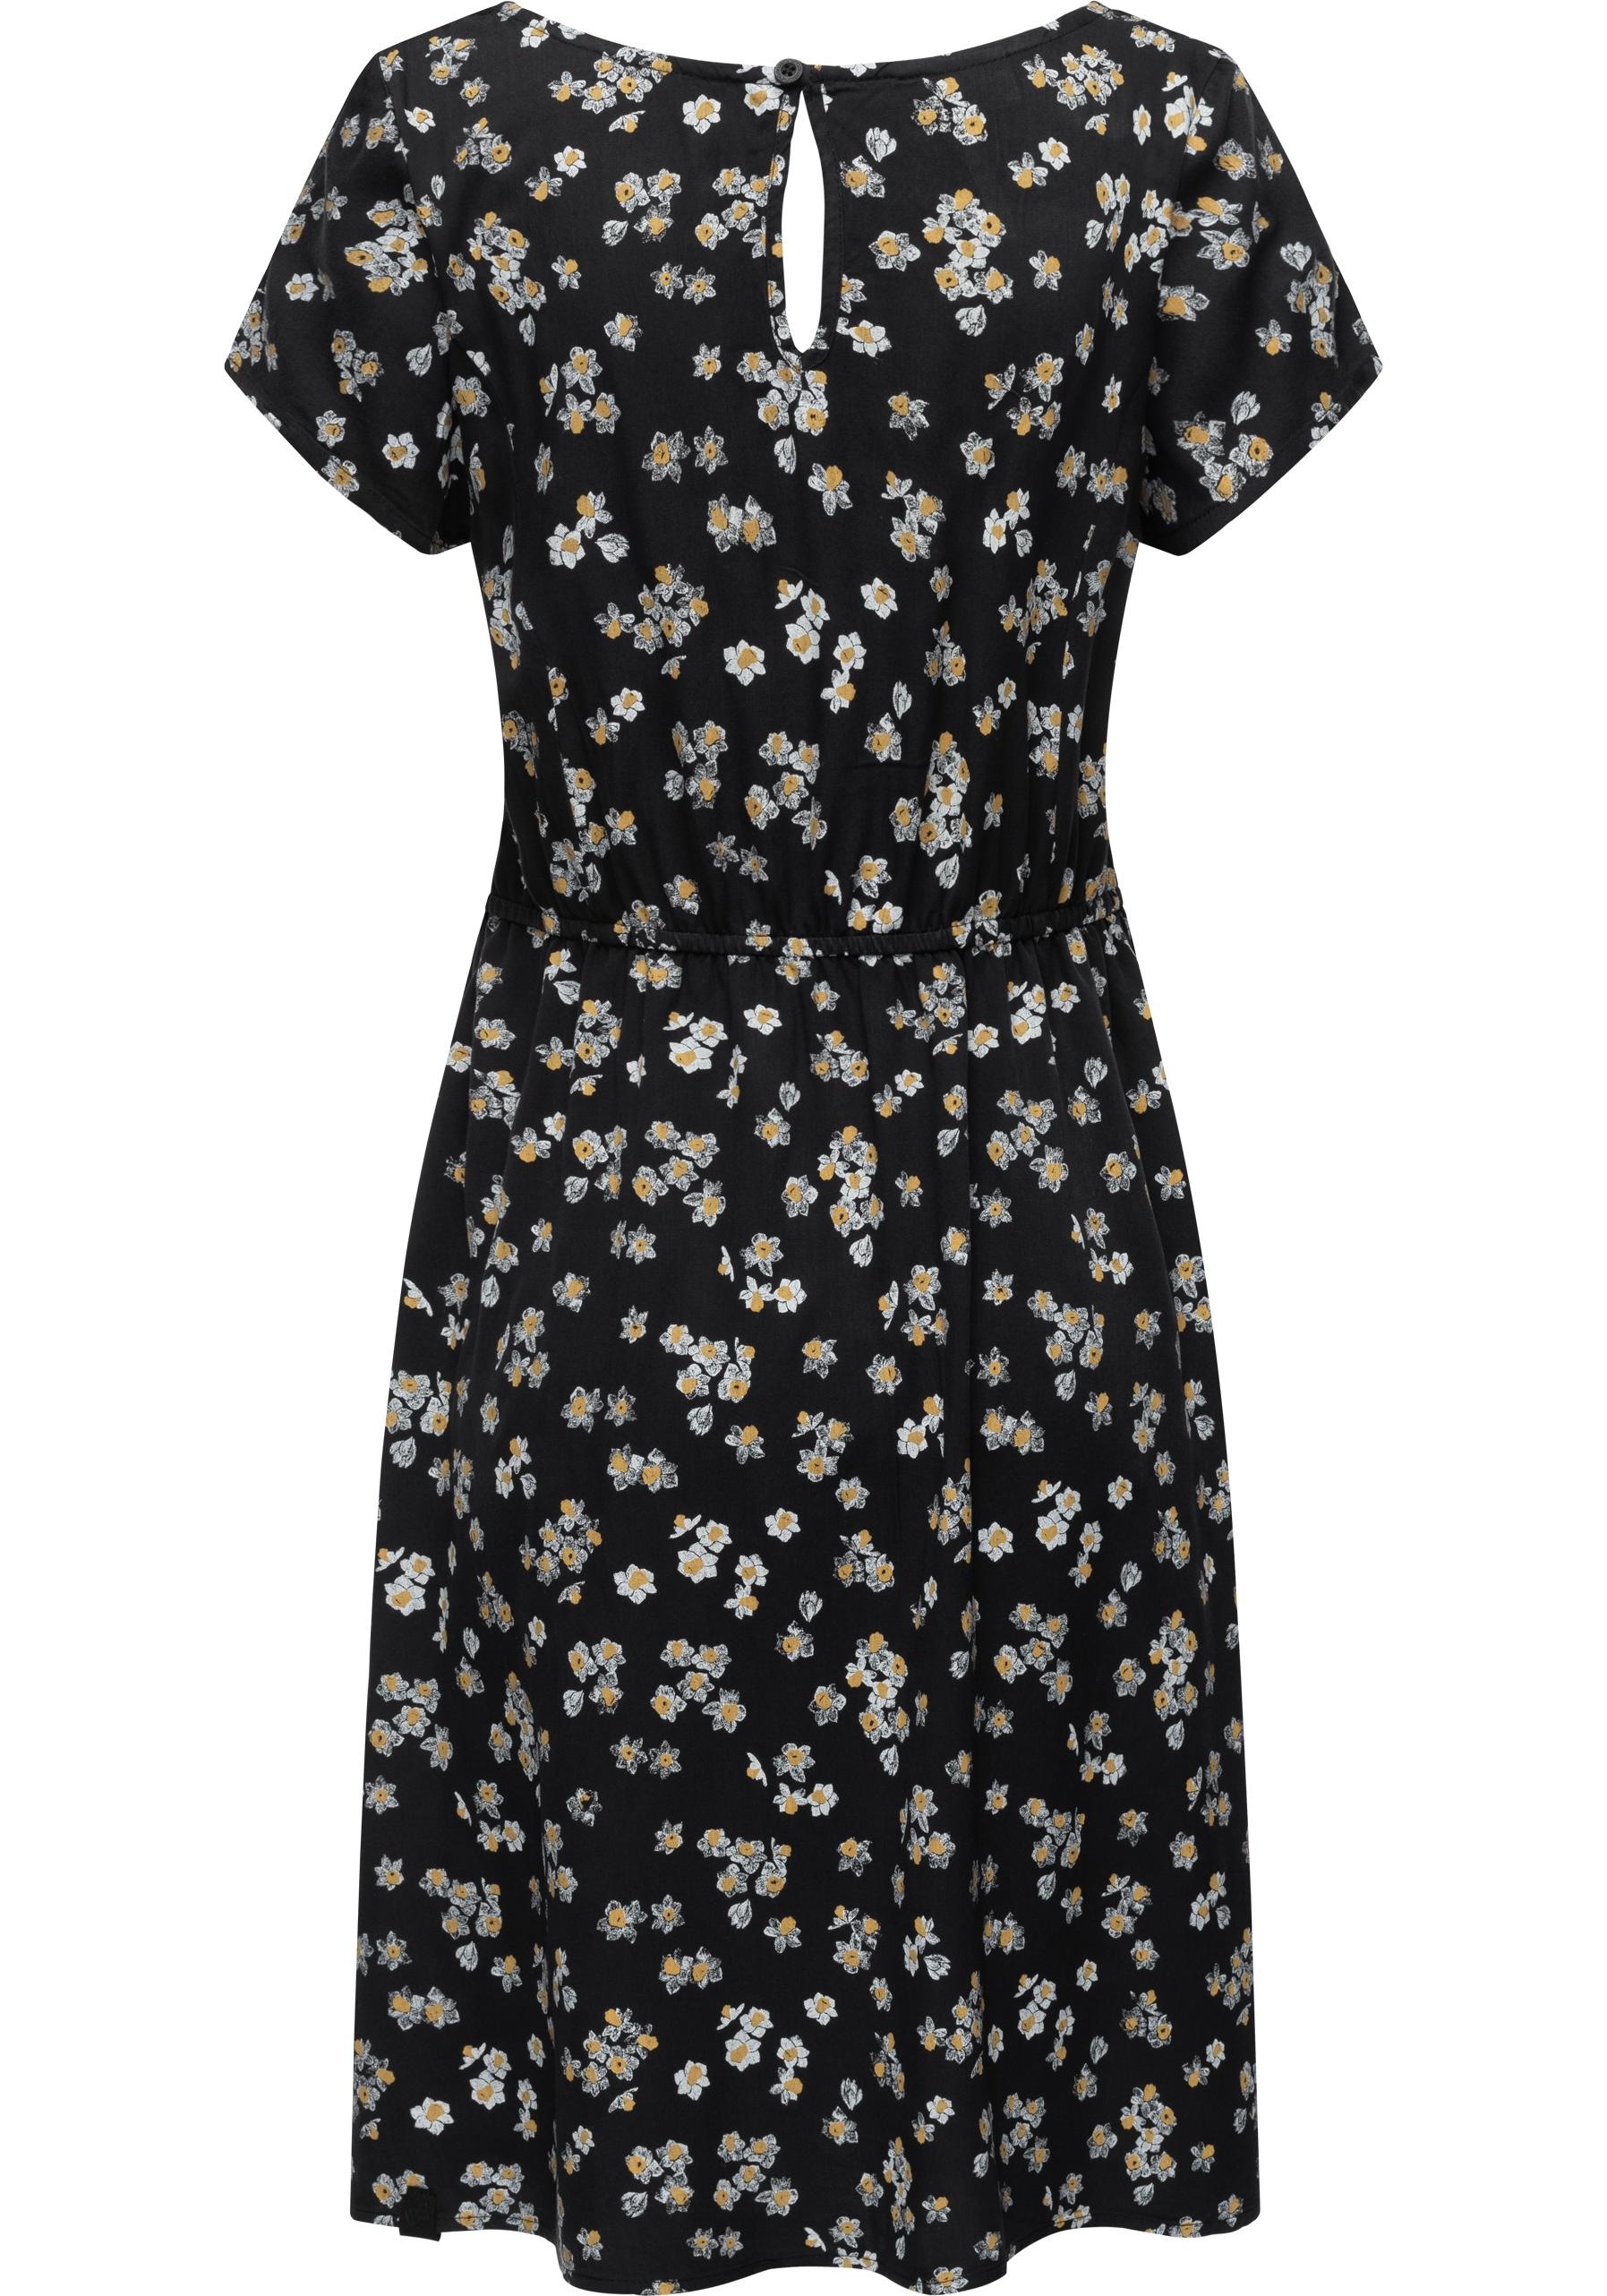 Ragwear Blusenkleid »Anerley«, stylisches Sommerkleid mit Allover Print  kaufen | I'm walking